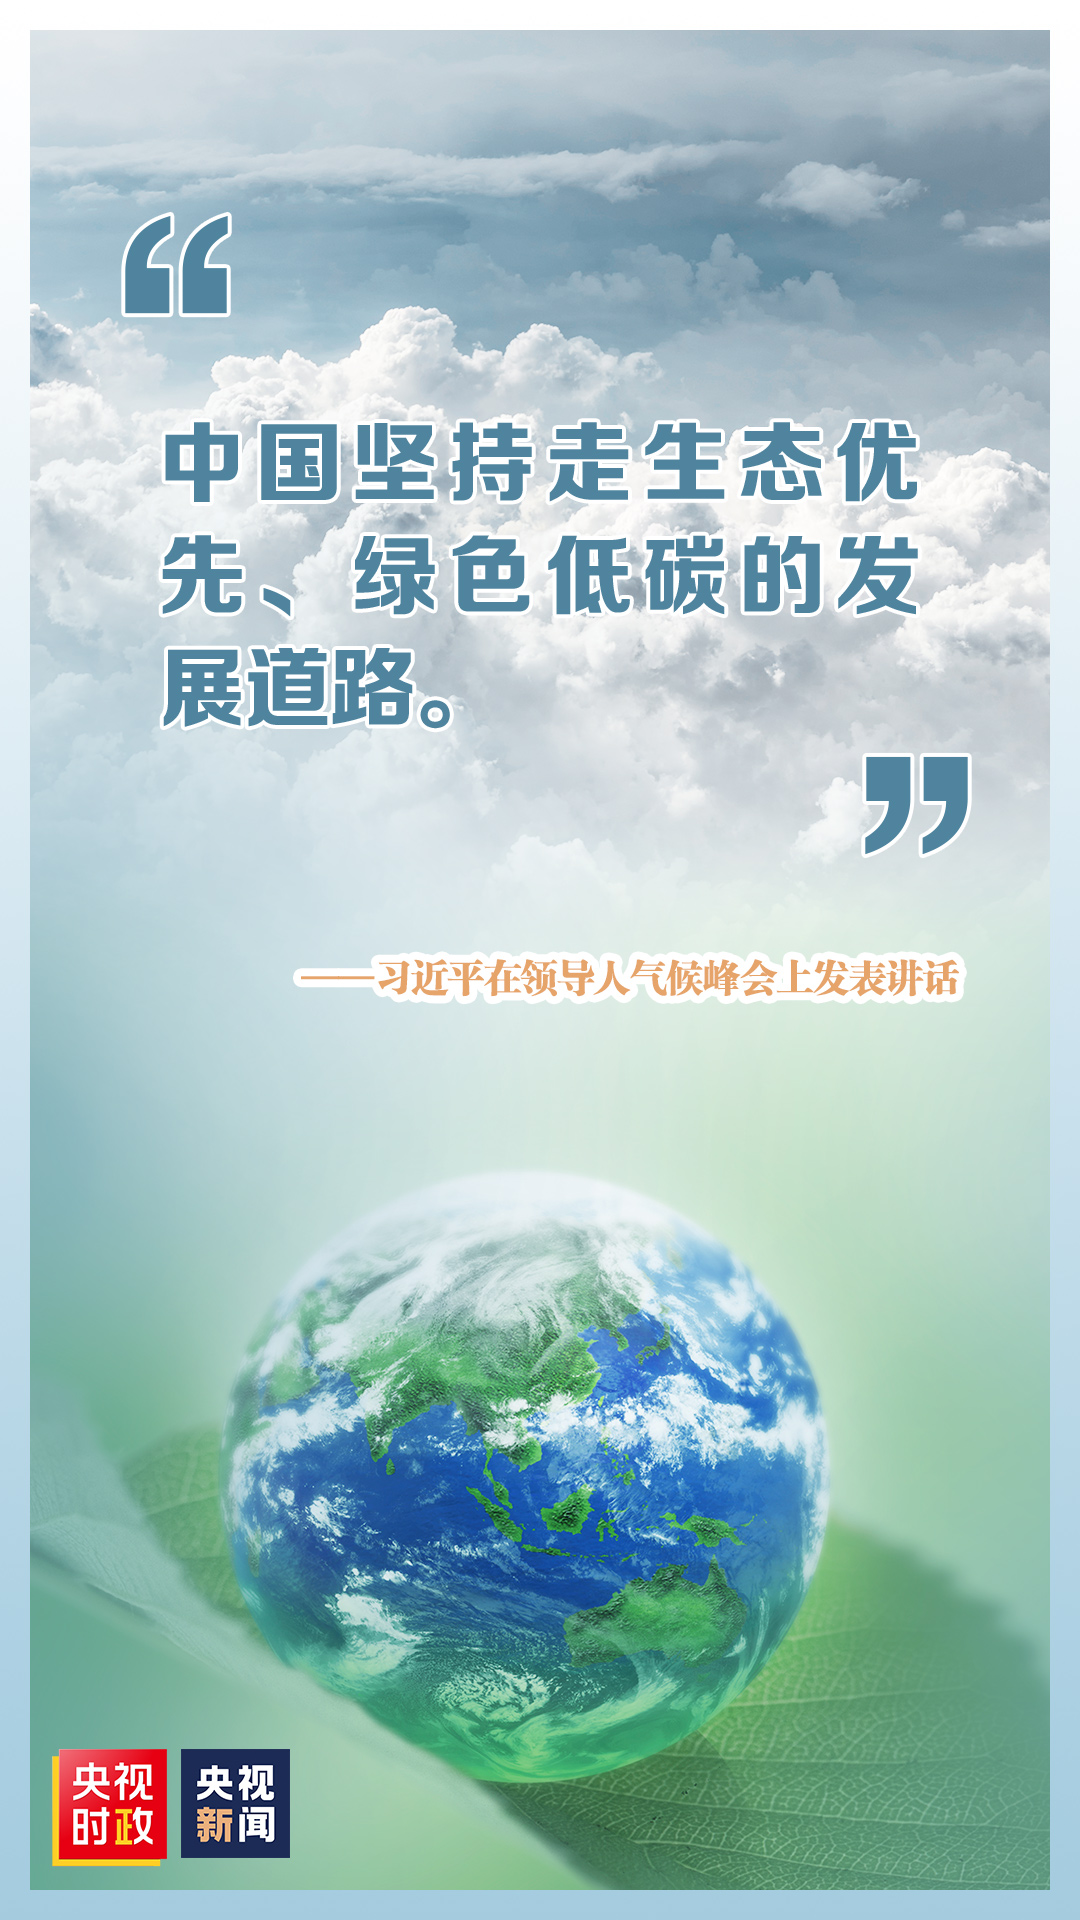 چین ماحولیاتی تحفظ کو ترجیح دیتے ہوئے کم کاربن کی حامل ترقیاتی راہ پر گامزن ہوگا، شی جن پھنگ_fororder_低碳发展道路